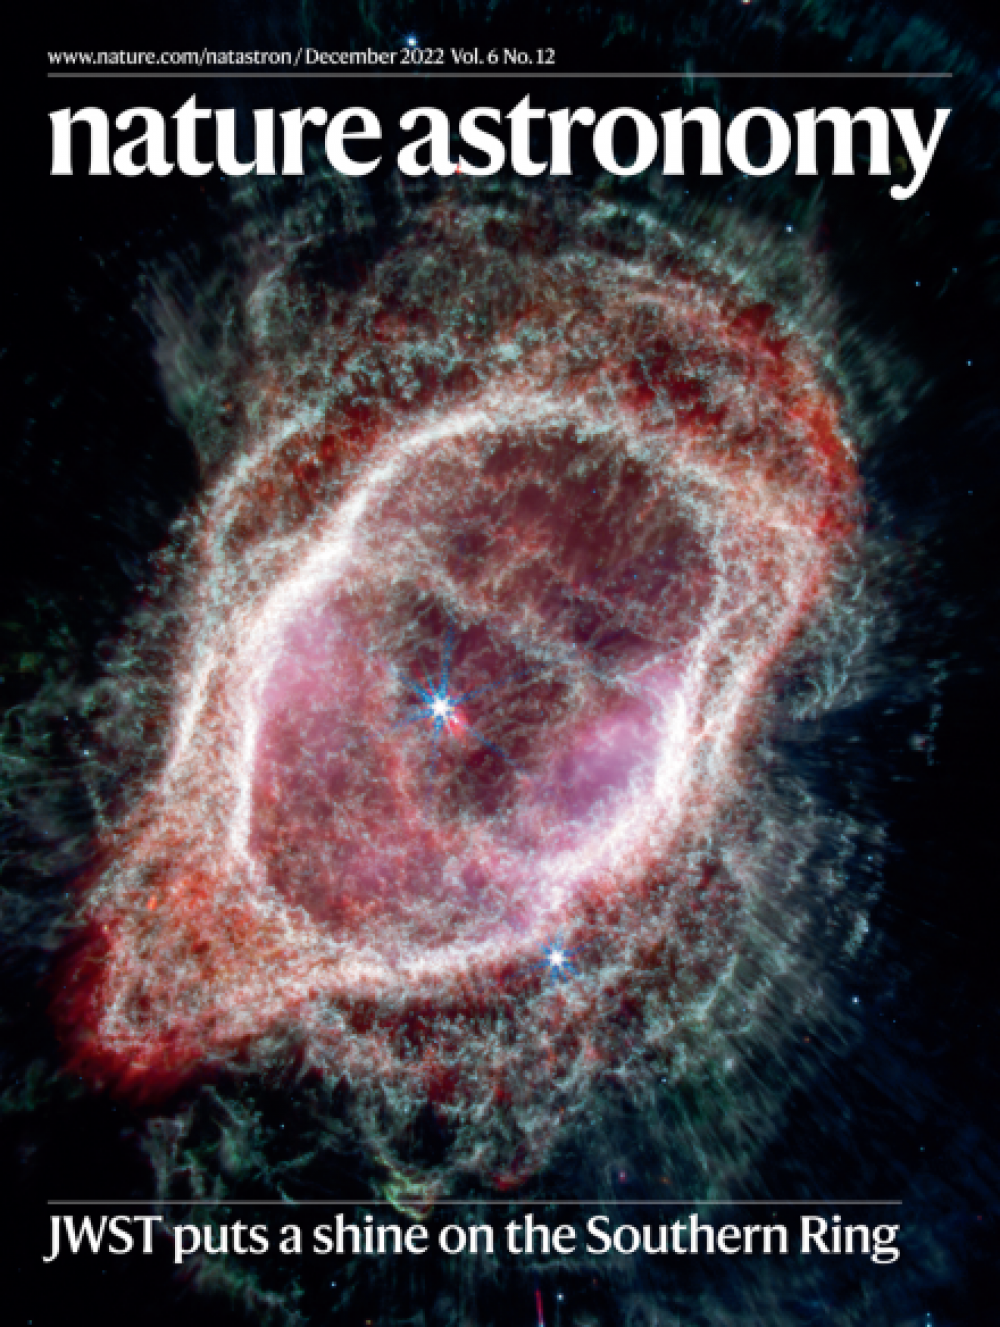 柏坤霆教授和国际天体物理学家的研究作为封面研究发表在《自然天文学》上